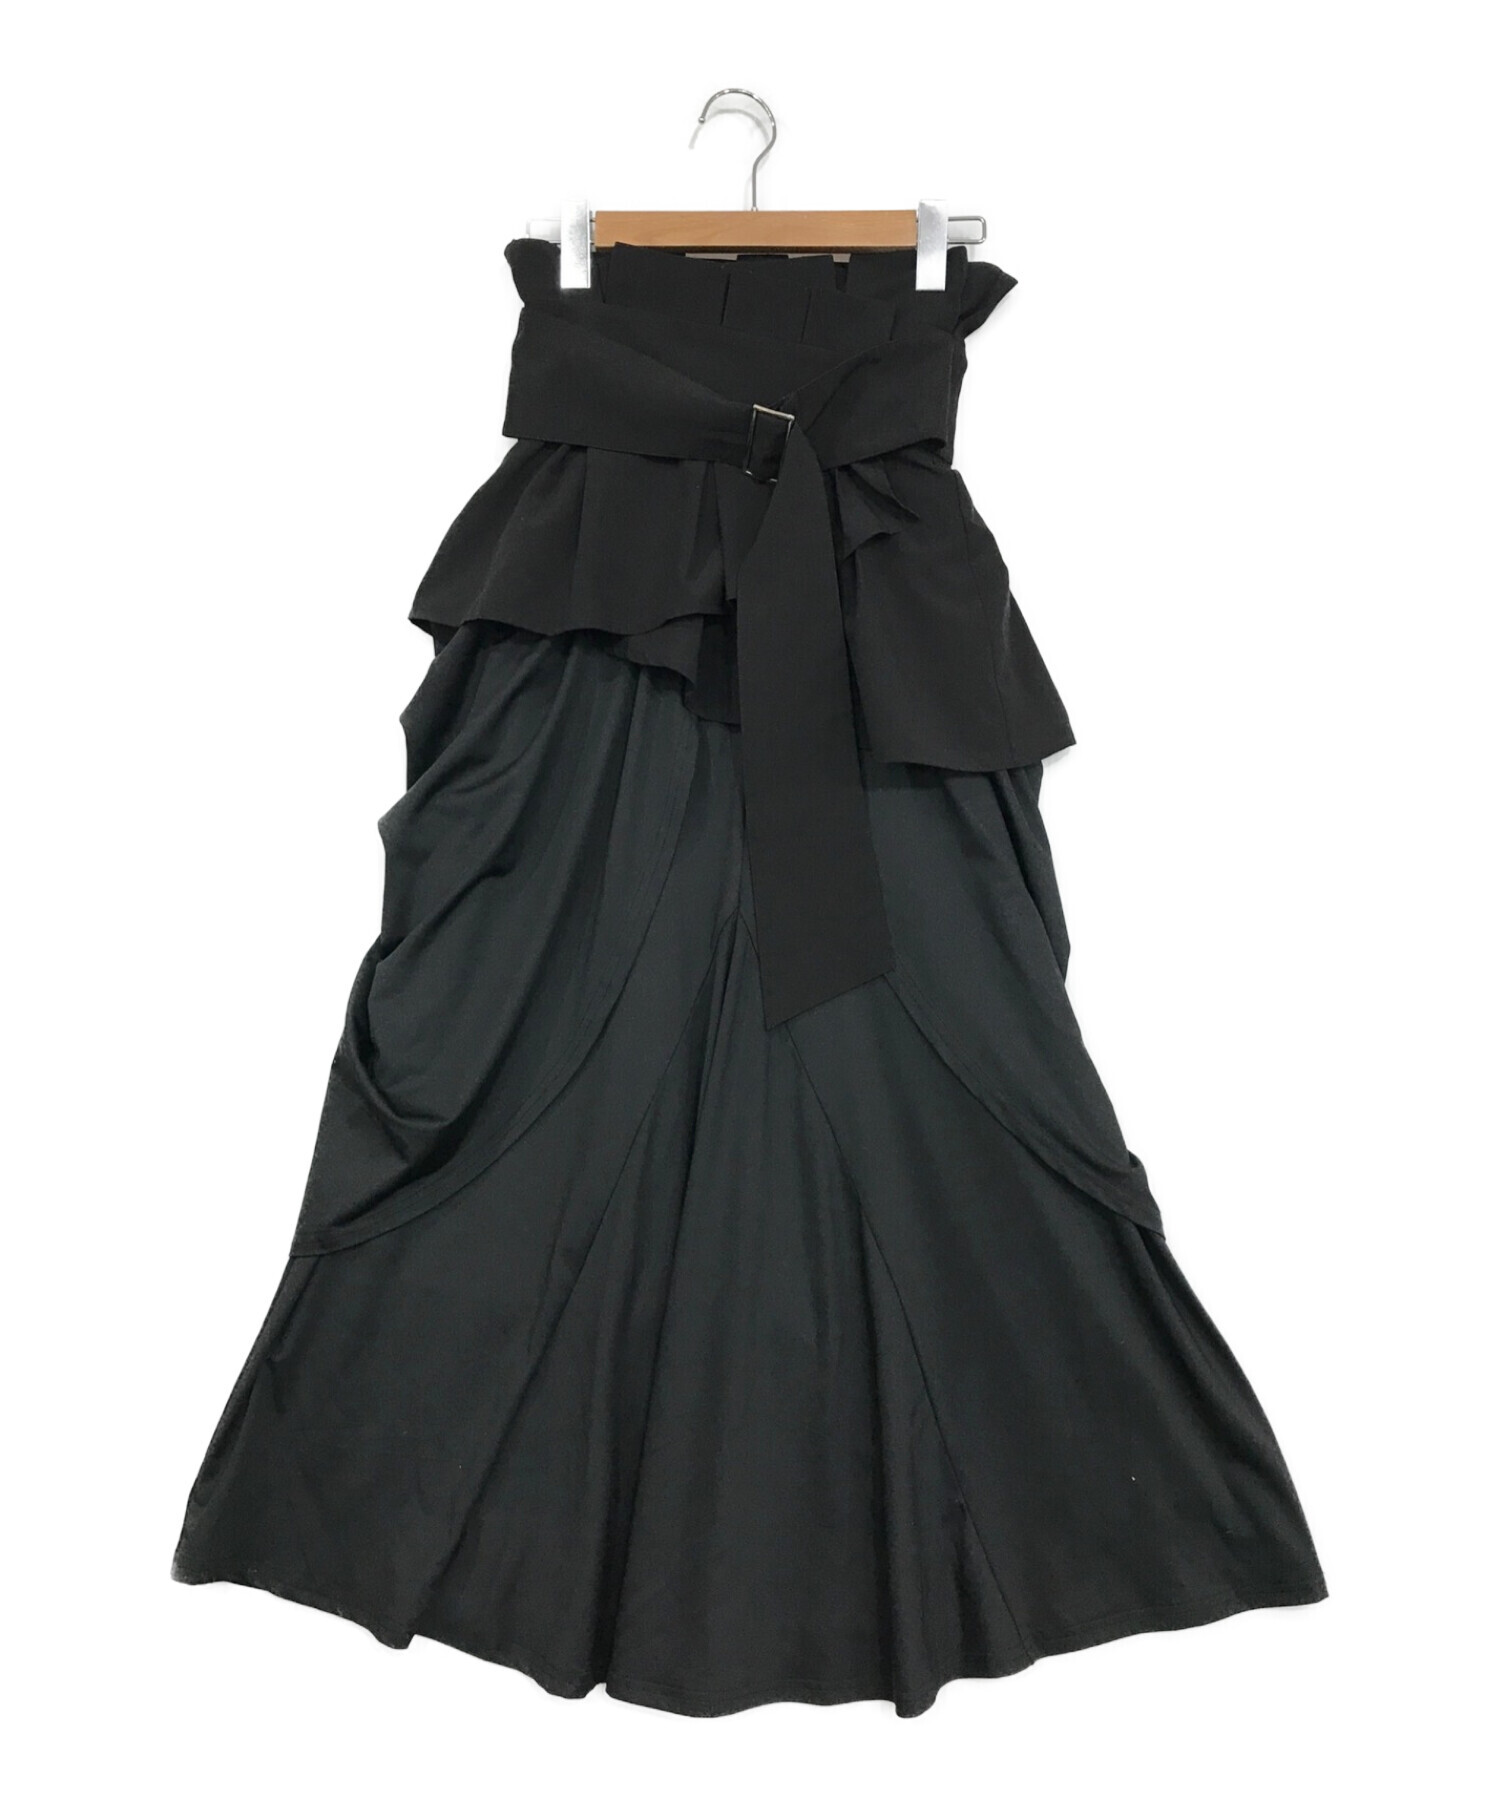 la belle etude (ラベルエチュード) ベルトセットドレープスカート ブラック サイズ:SIZE Free